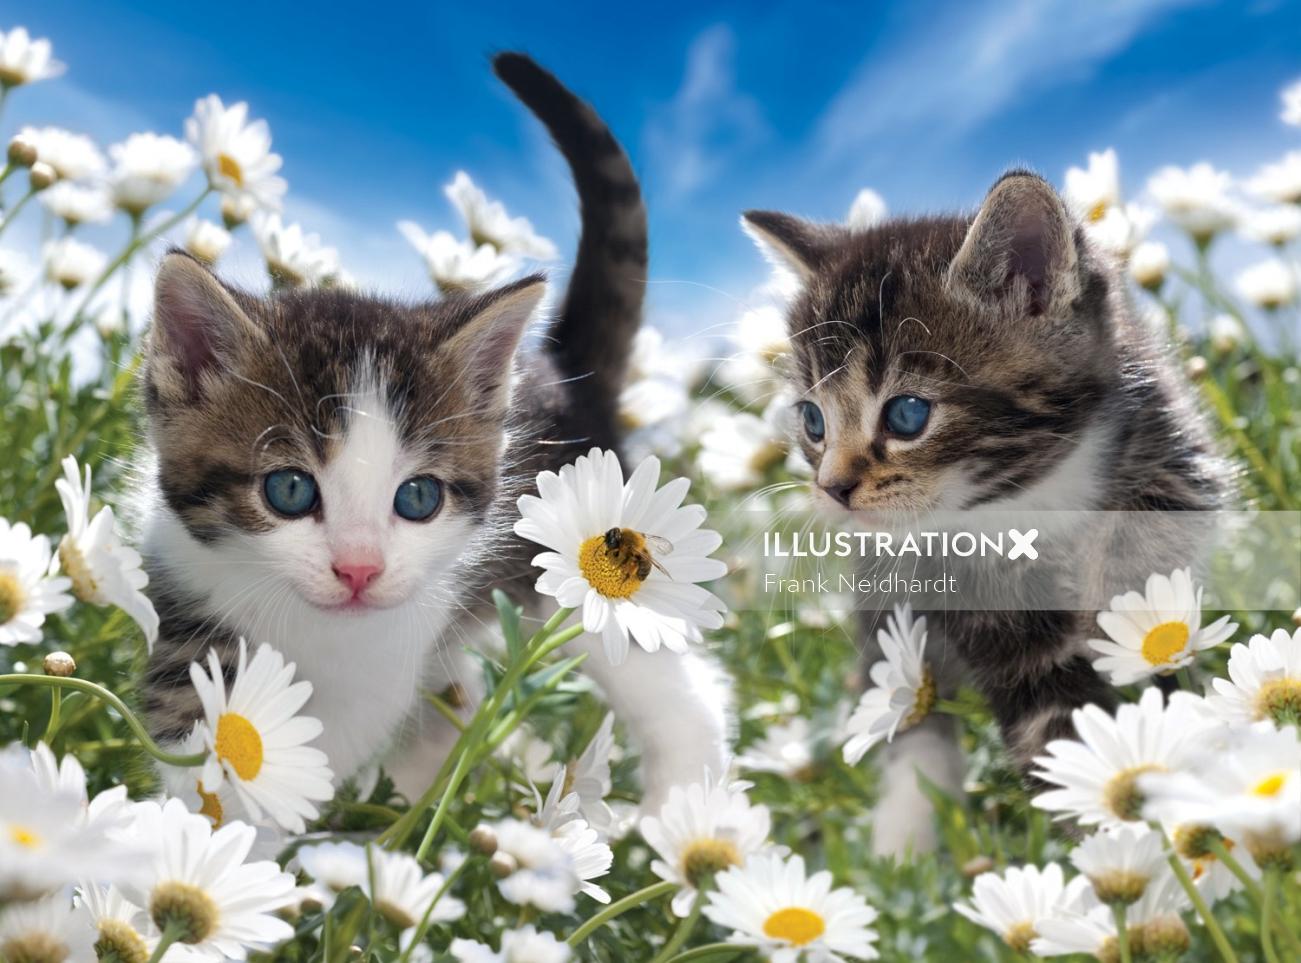 Cute Kittens in flower garden
